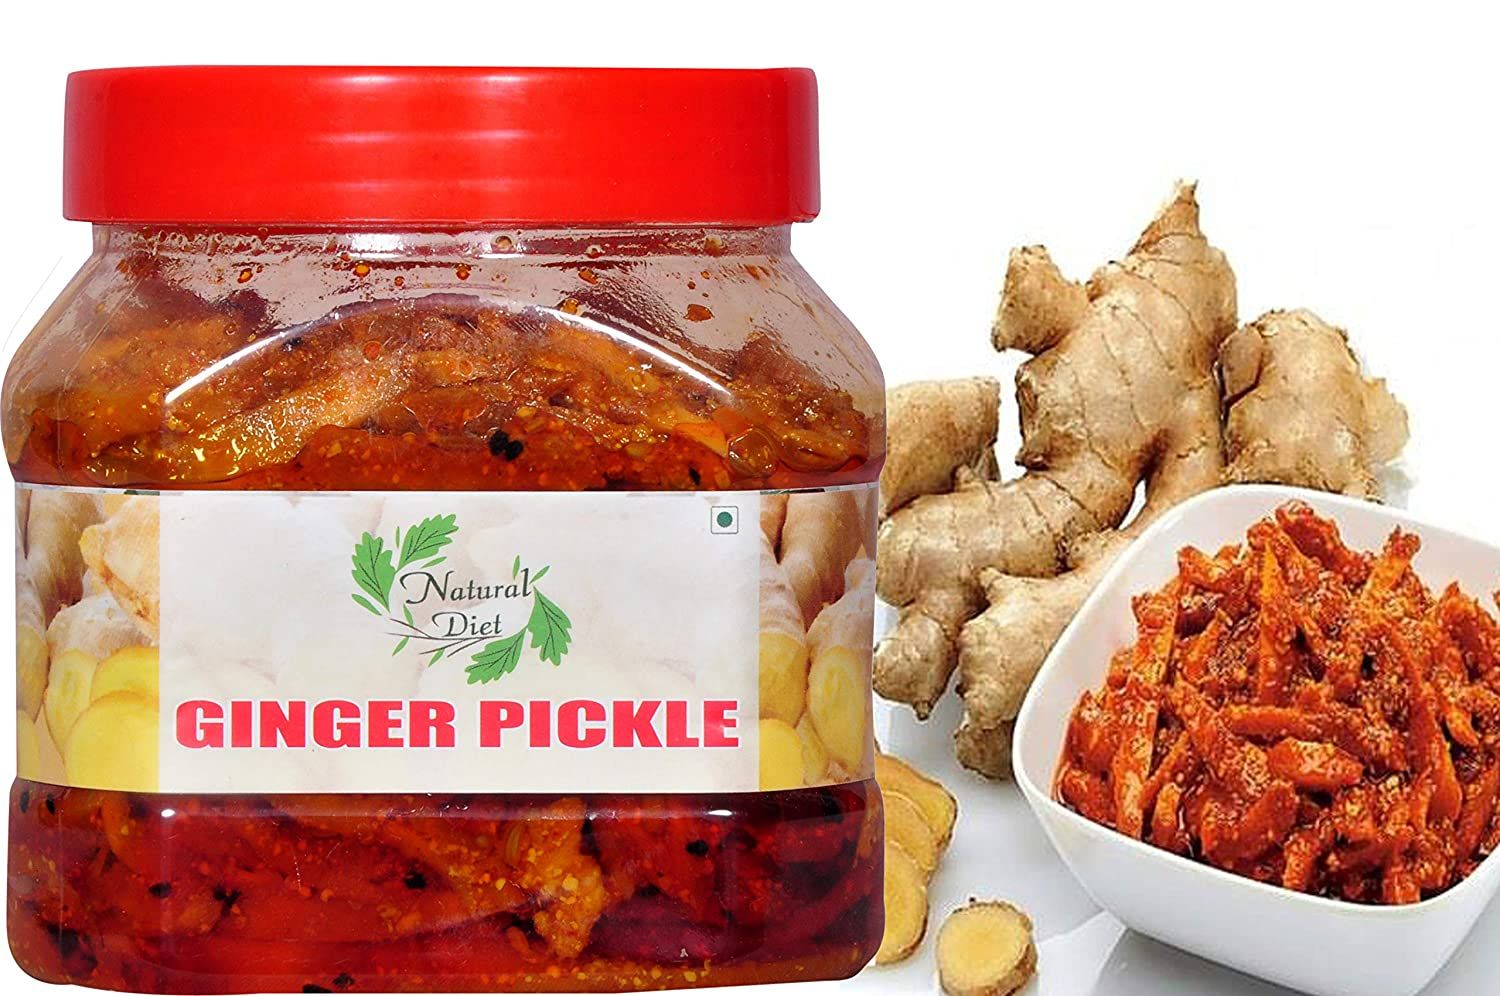 Natural Diet Ginger Pickle Image